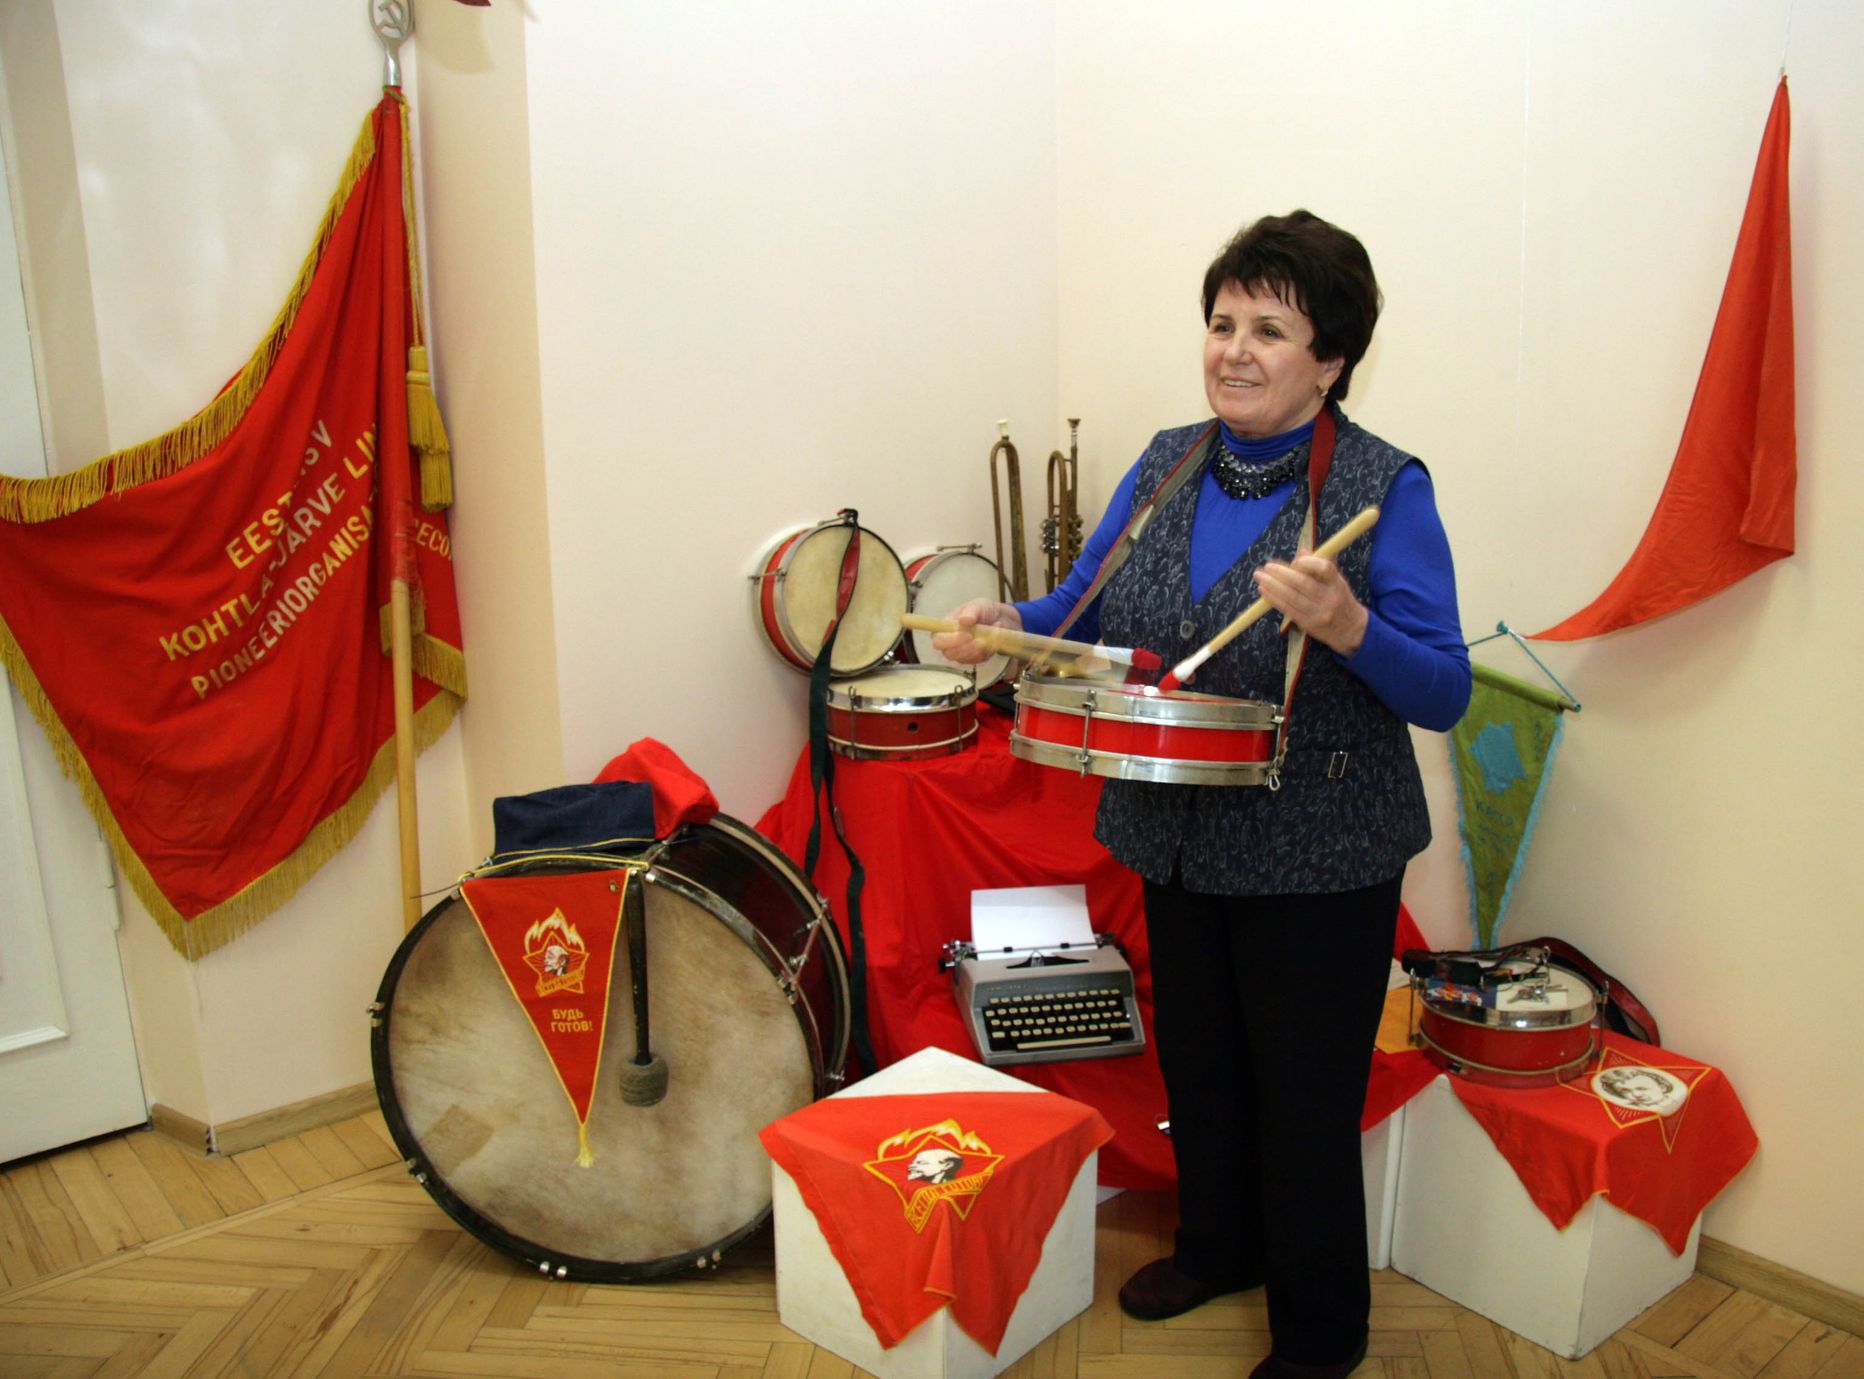 Анна Рентик в 2016 году на выставке, посвященной 60-летию Дома творчества школьников: в советское время он носил название Дом пионеров, атрибуты того времени теперь музейные экспонаты.